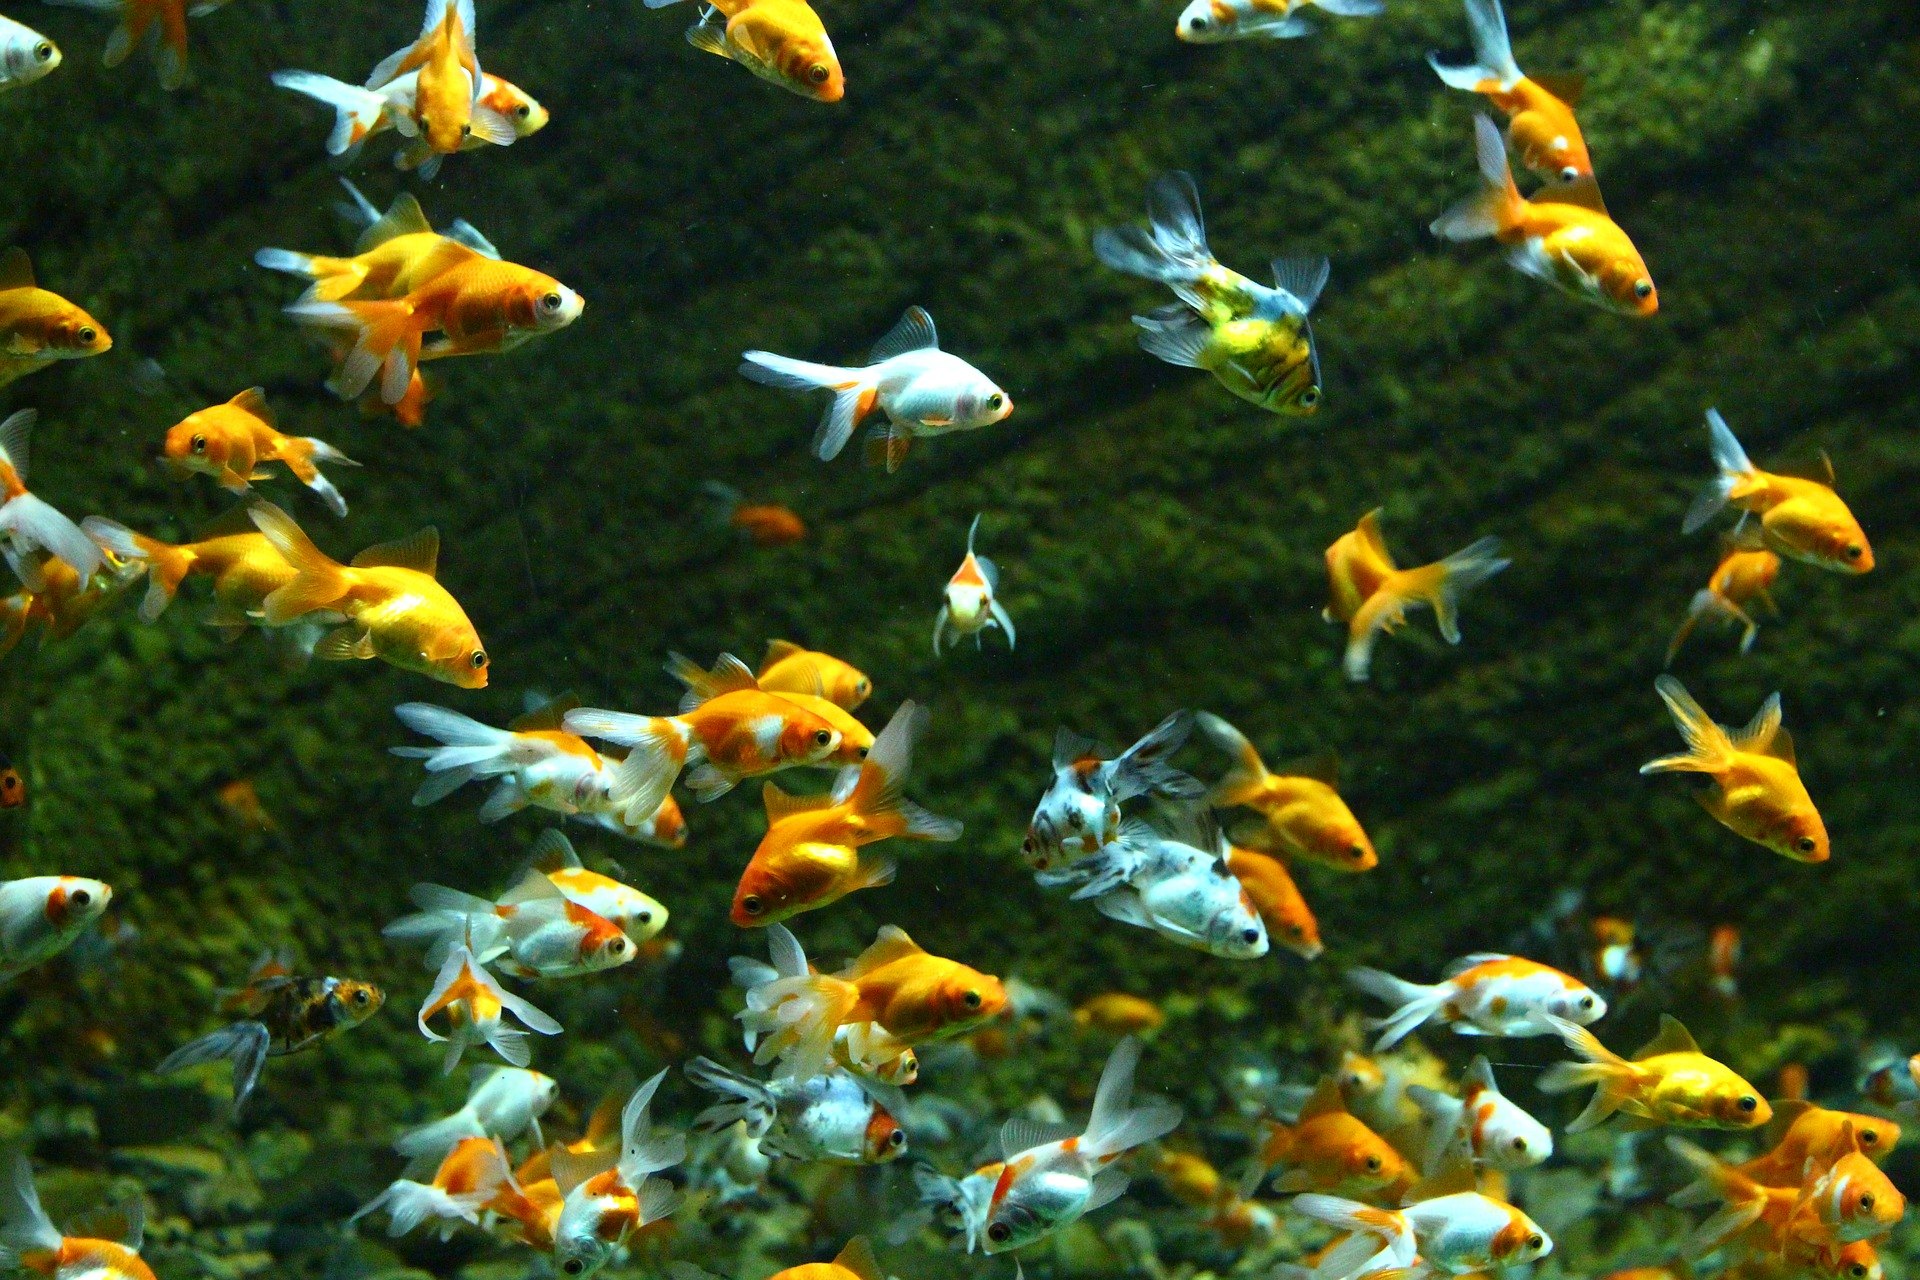 Teichfische machen diese Gartenverzierung attraktiver. Häufige Arten sind Rosenheu und goldener Orfa.